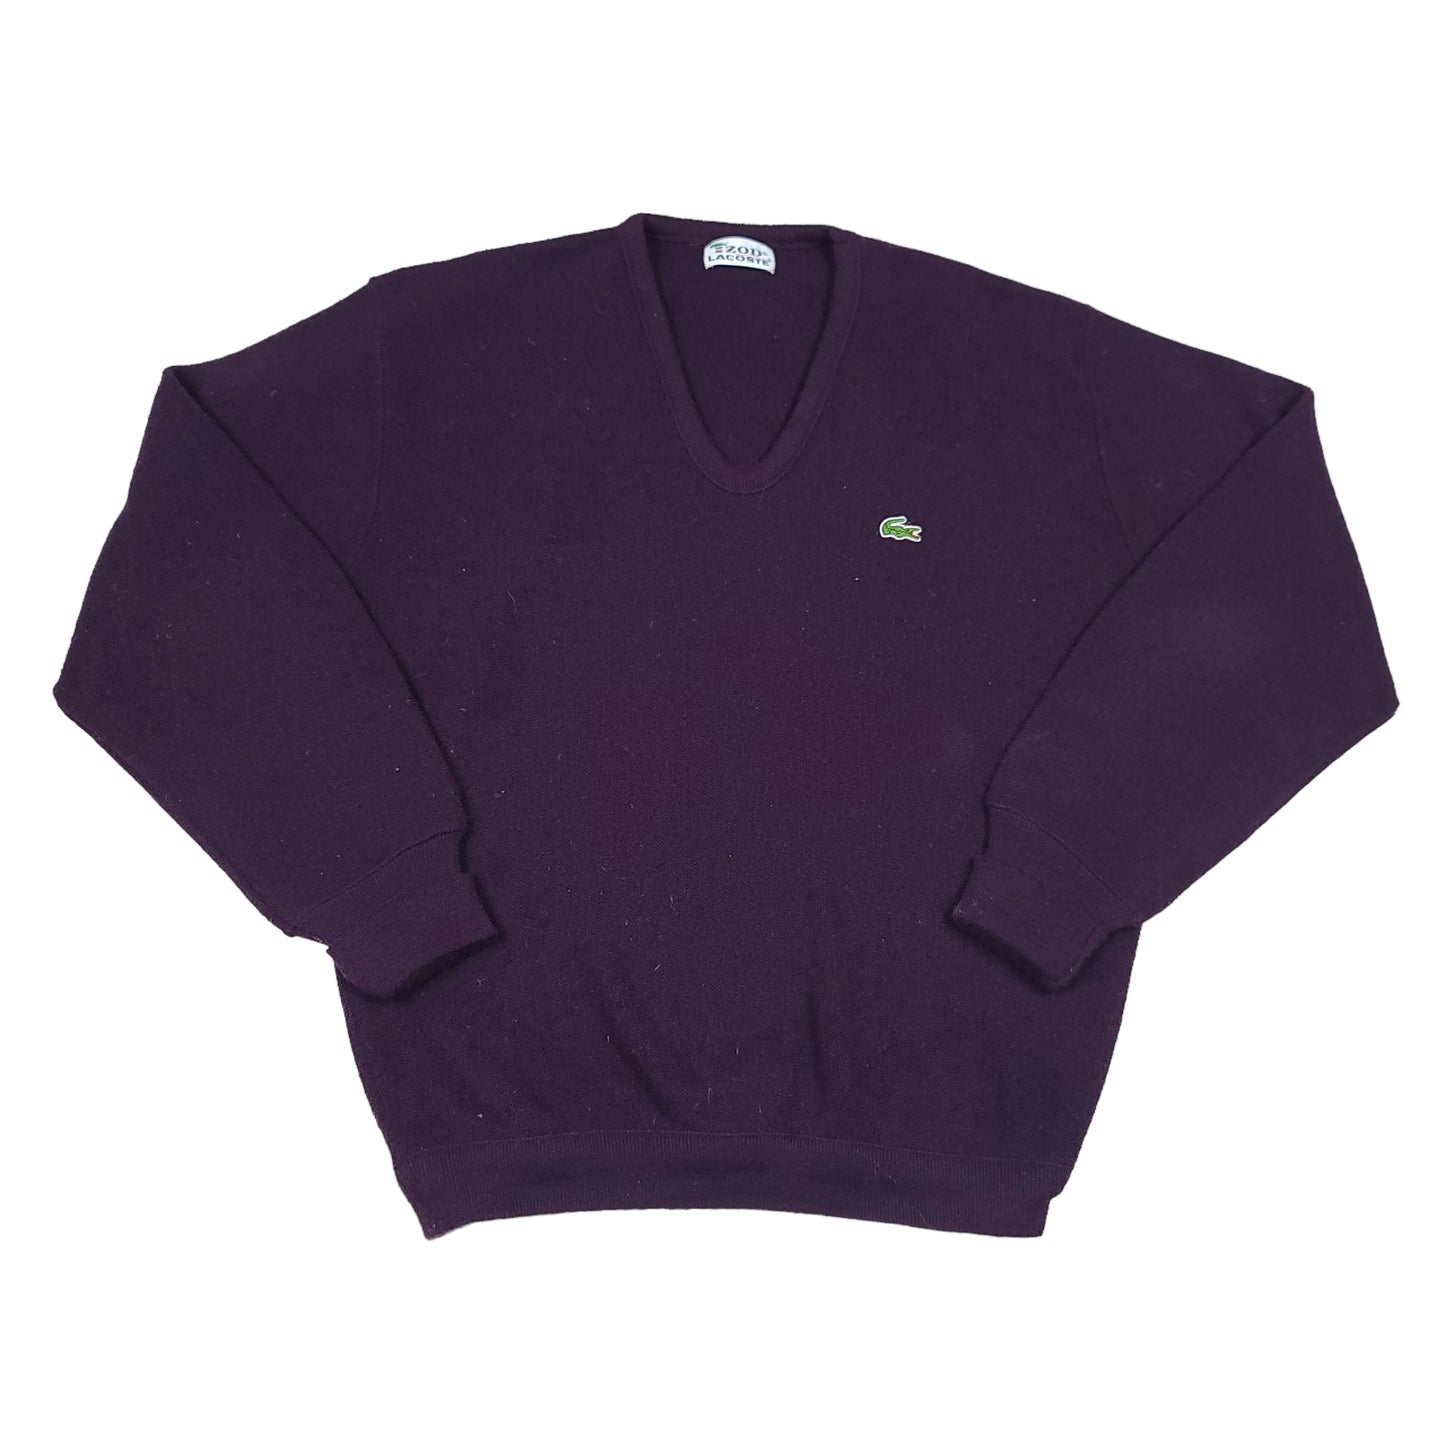 Izod Lacoste Purple V Neck Wool Sweater